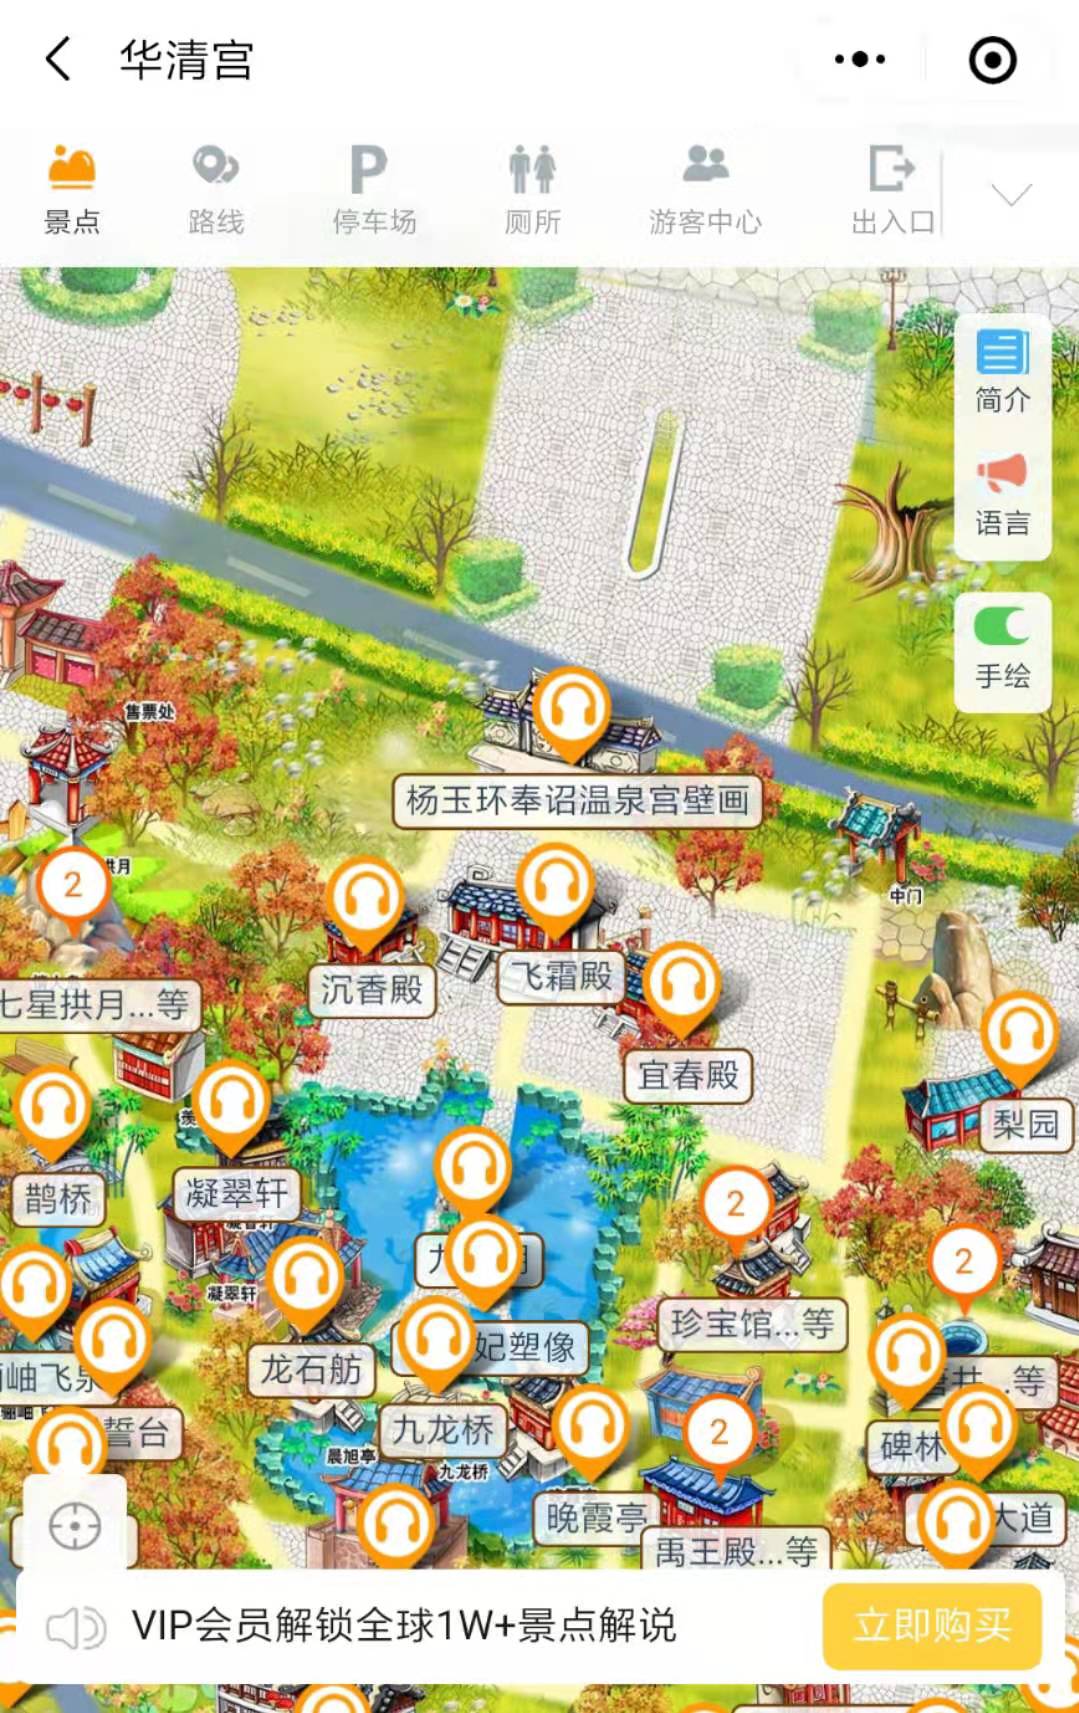 陕西西安华清宫5A级旅游景区手绘地图、语音讲解、电子导览等智能导览系统上线了.jpg